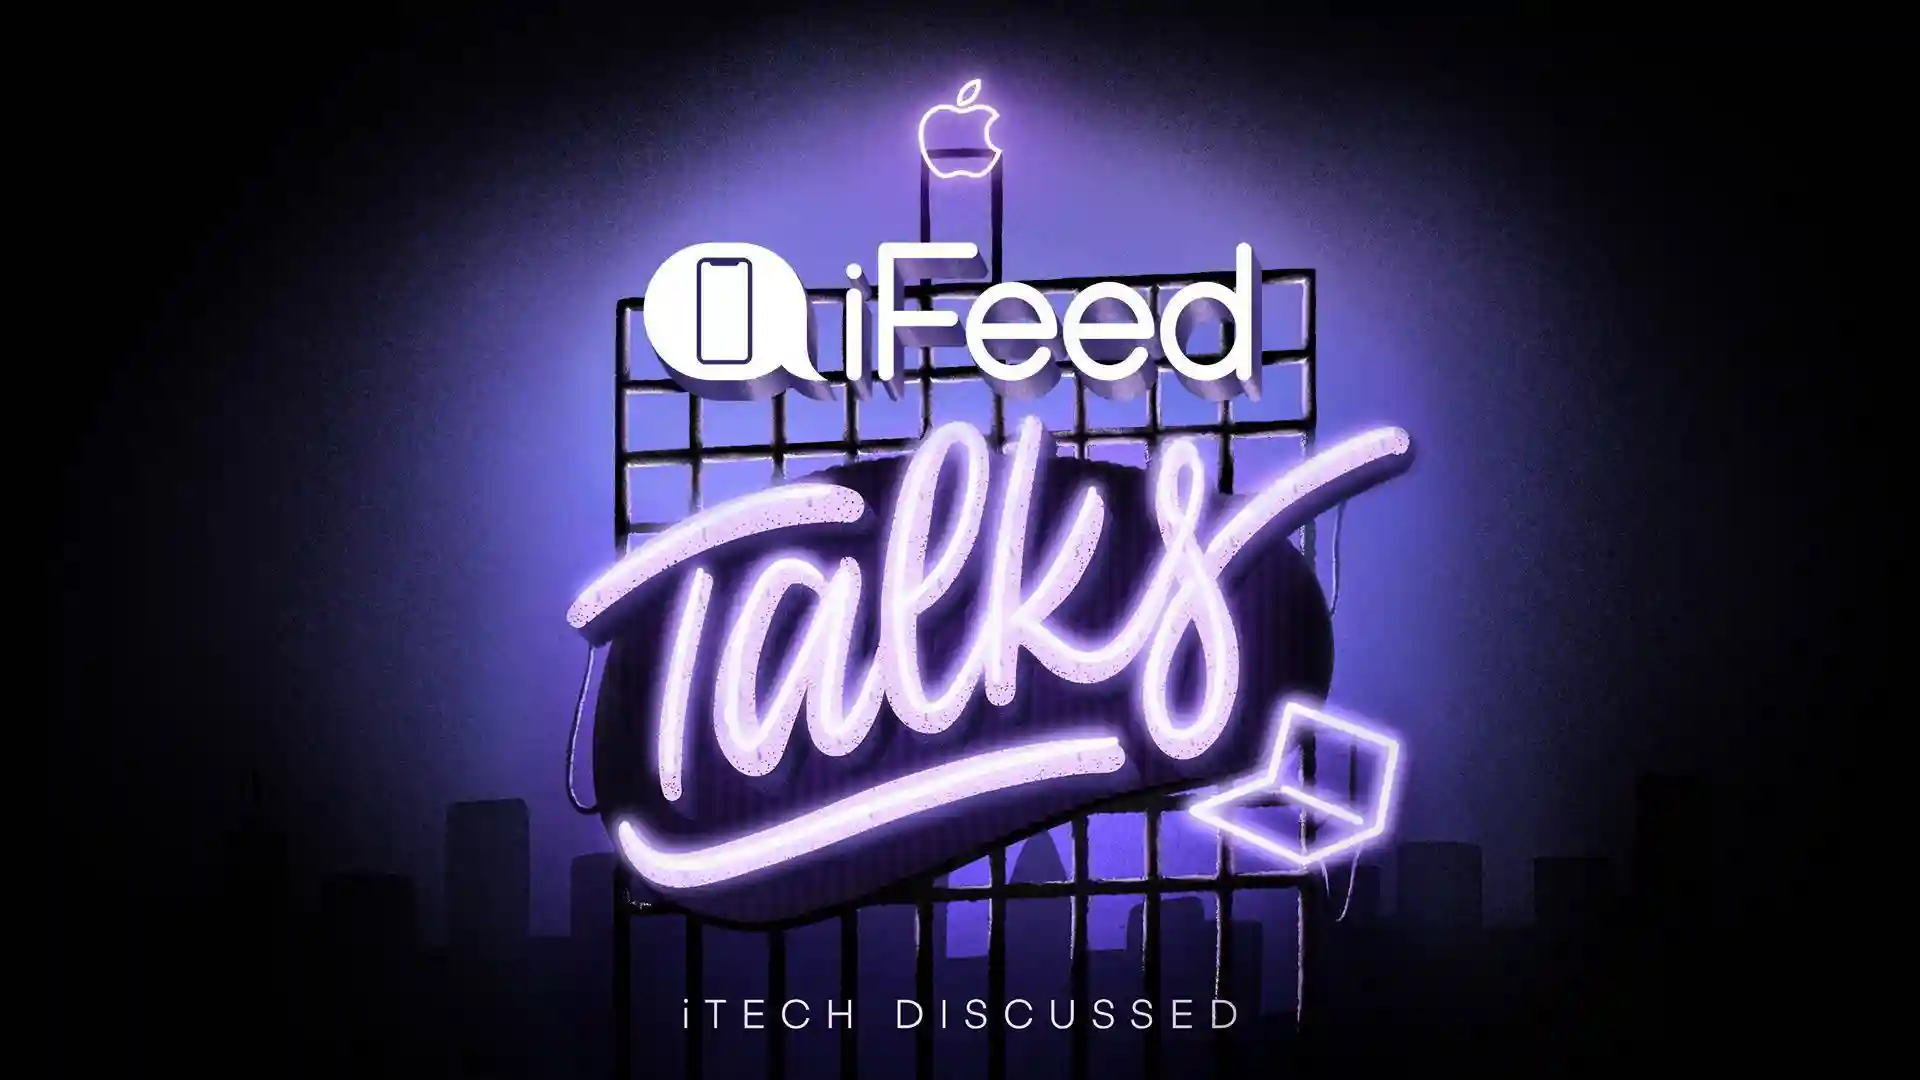 iFeed Talks - As novidades do iOS 16.2 Beta, o novo iCloud.com, e mais